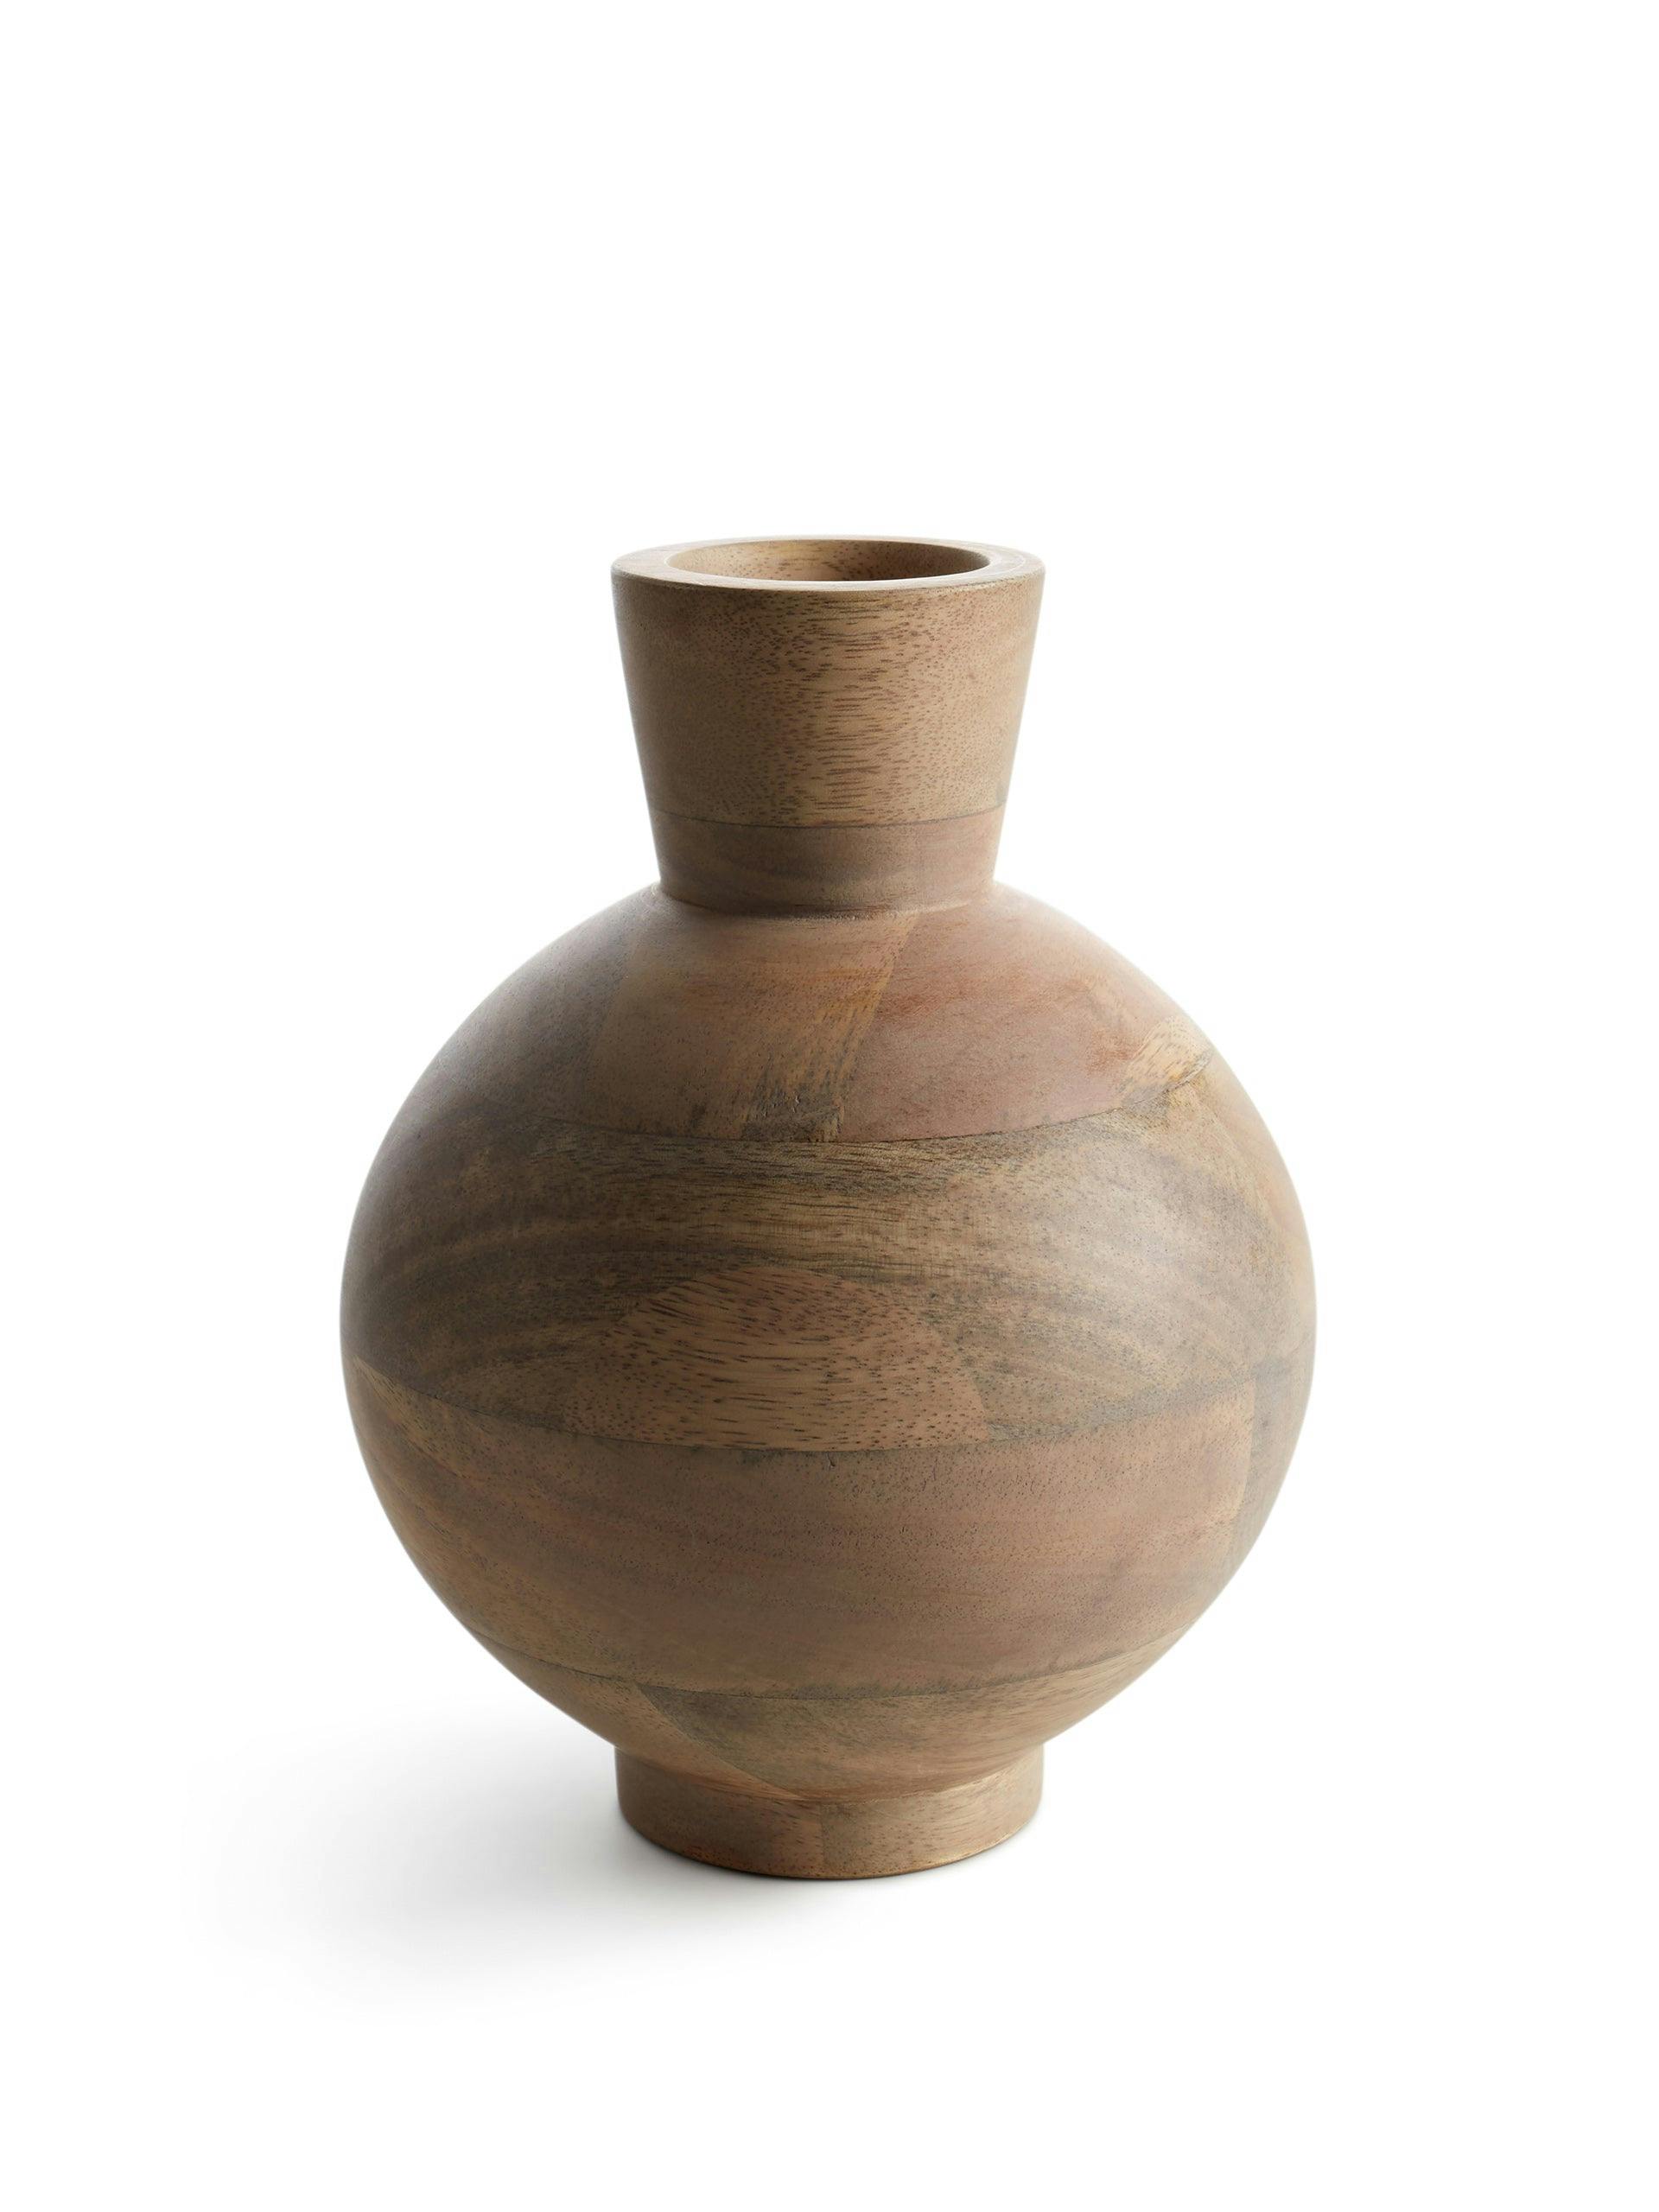 Mango wood vase